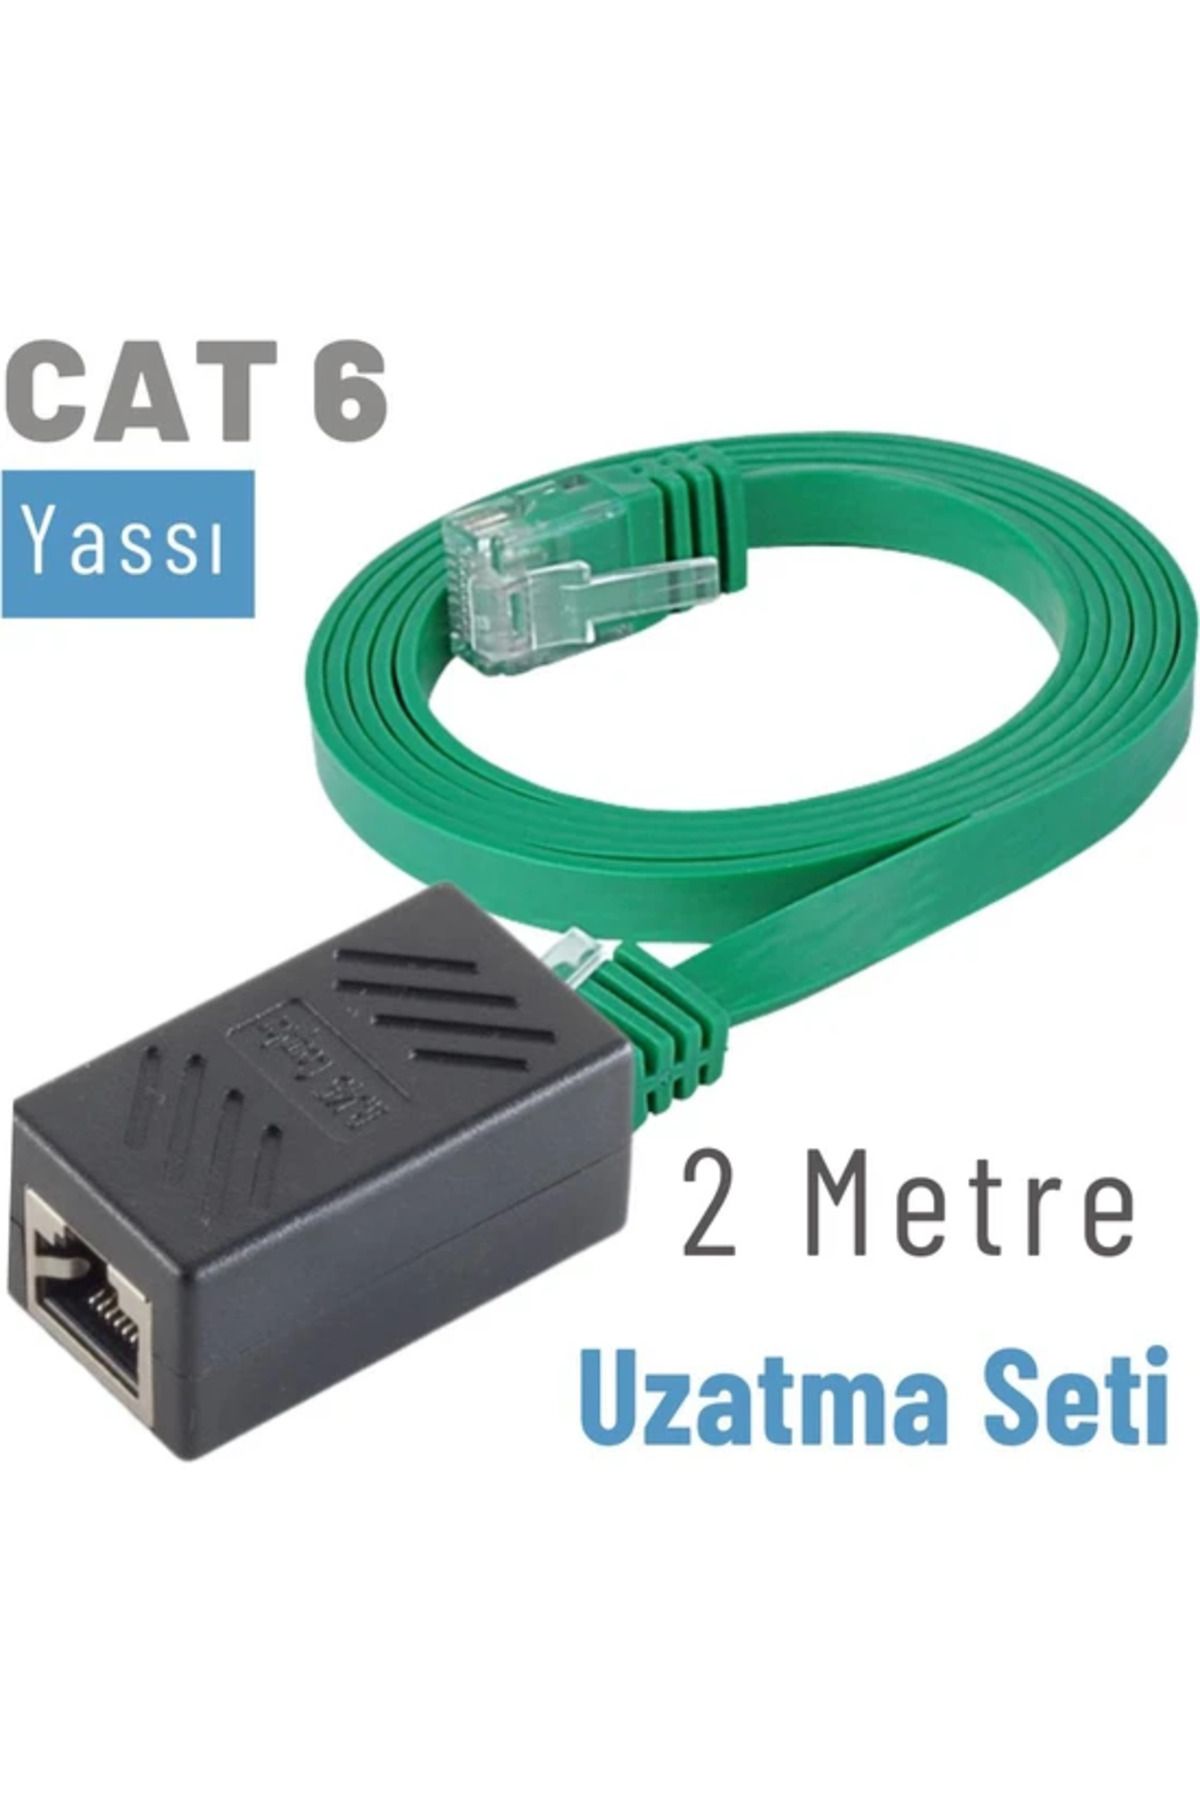 IRENIS Cat6 Kablo 2 Metre Uzatma Seti, Yassı Ethernet Kablo Ve Ekleyici, Yeşil